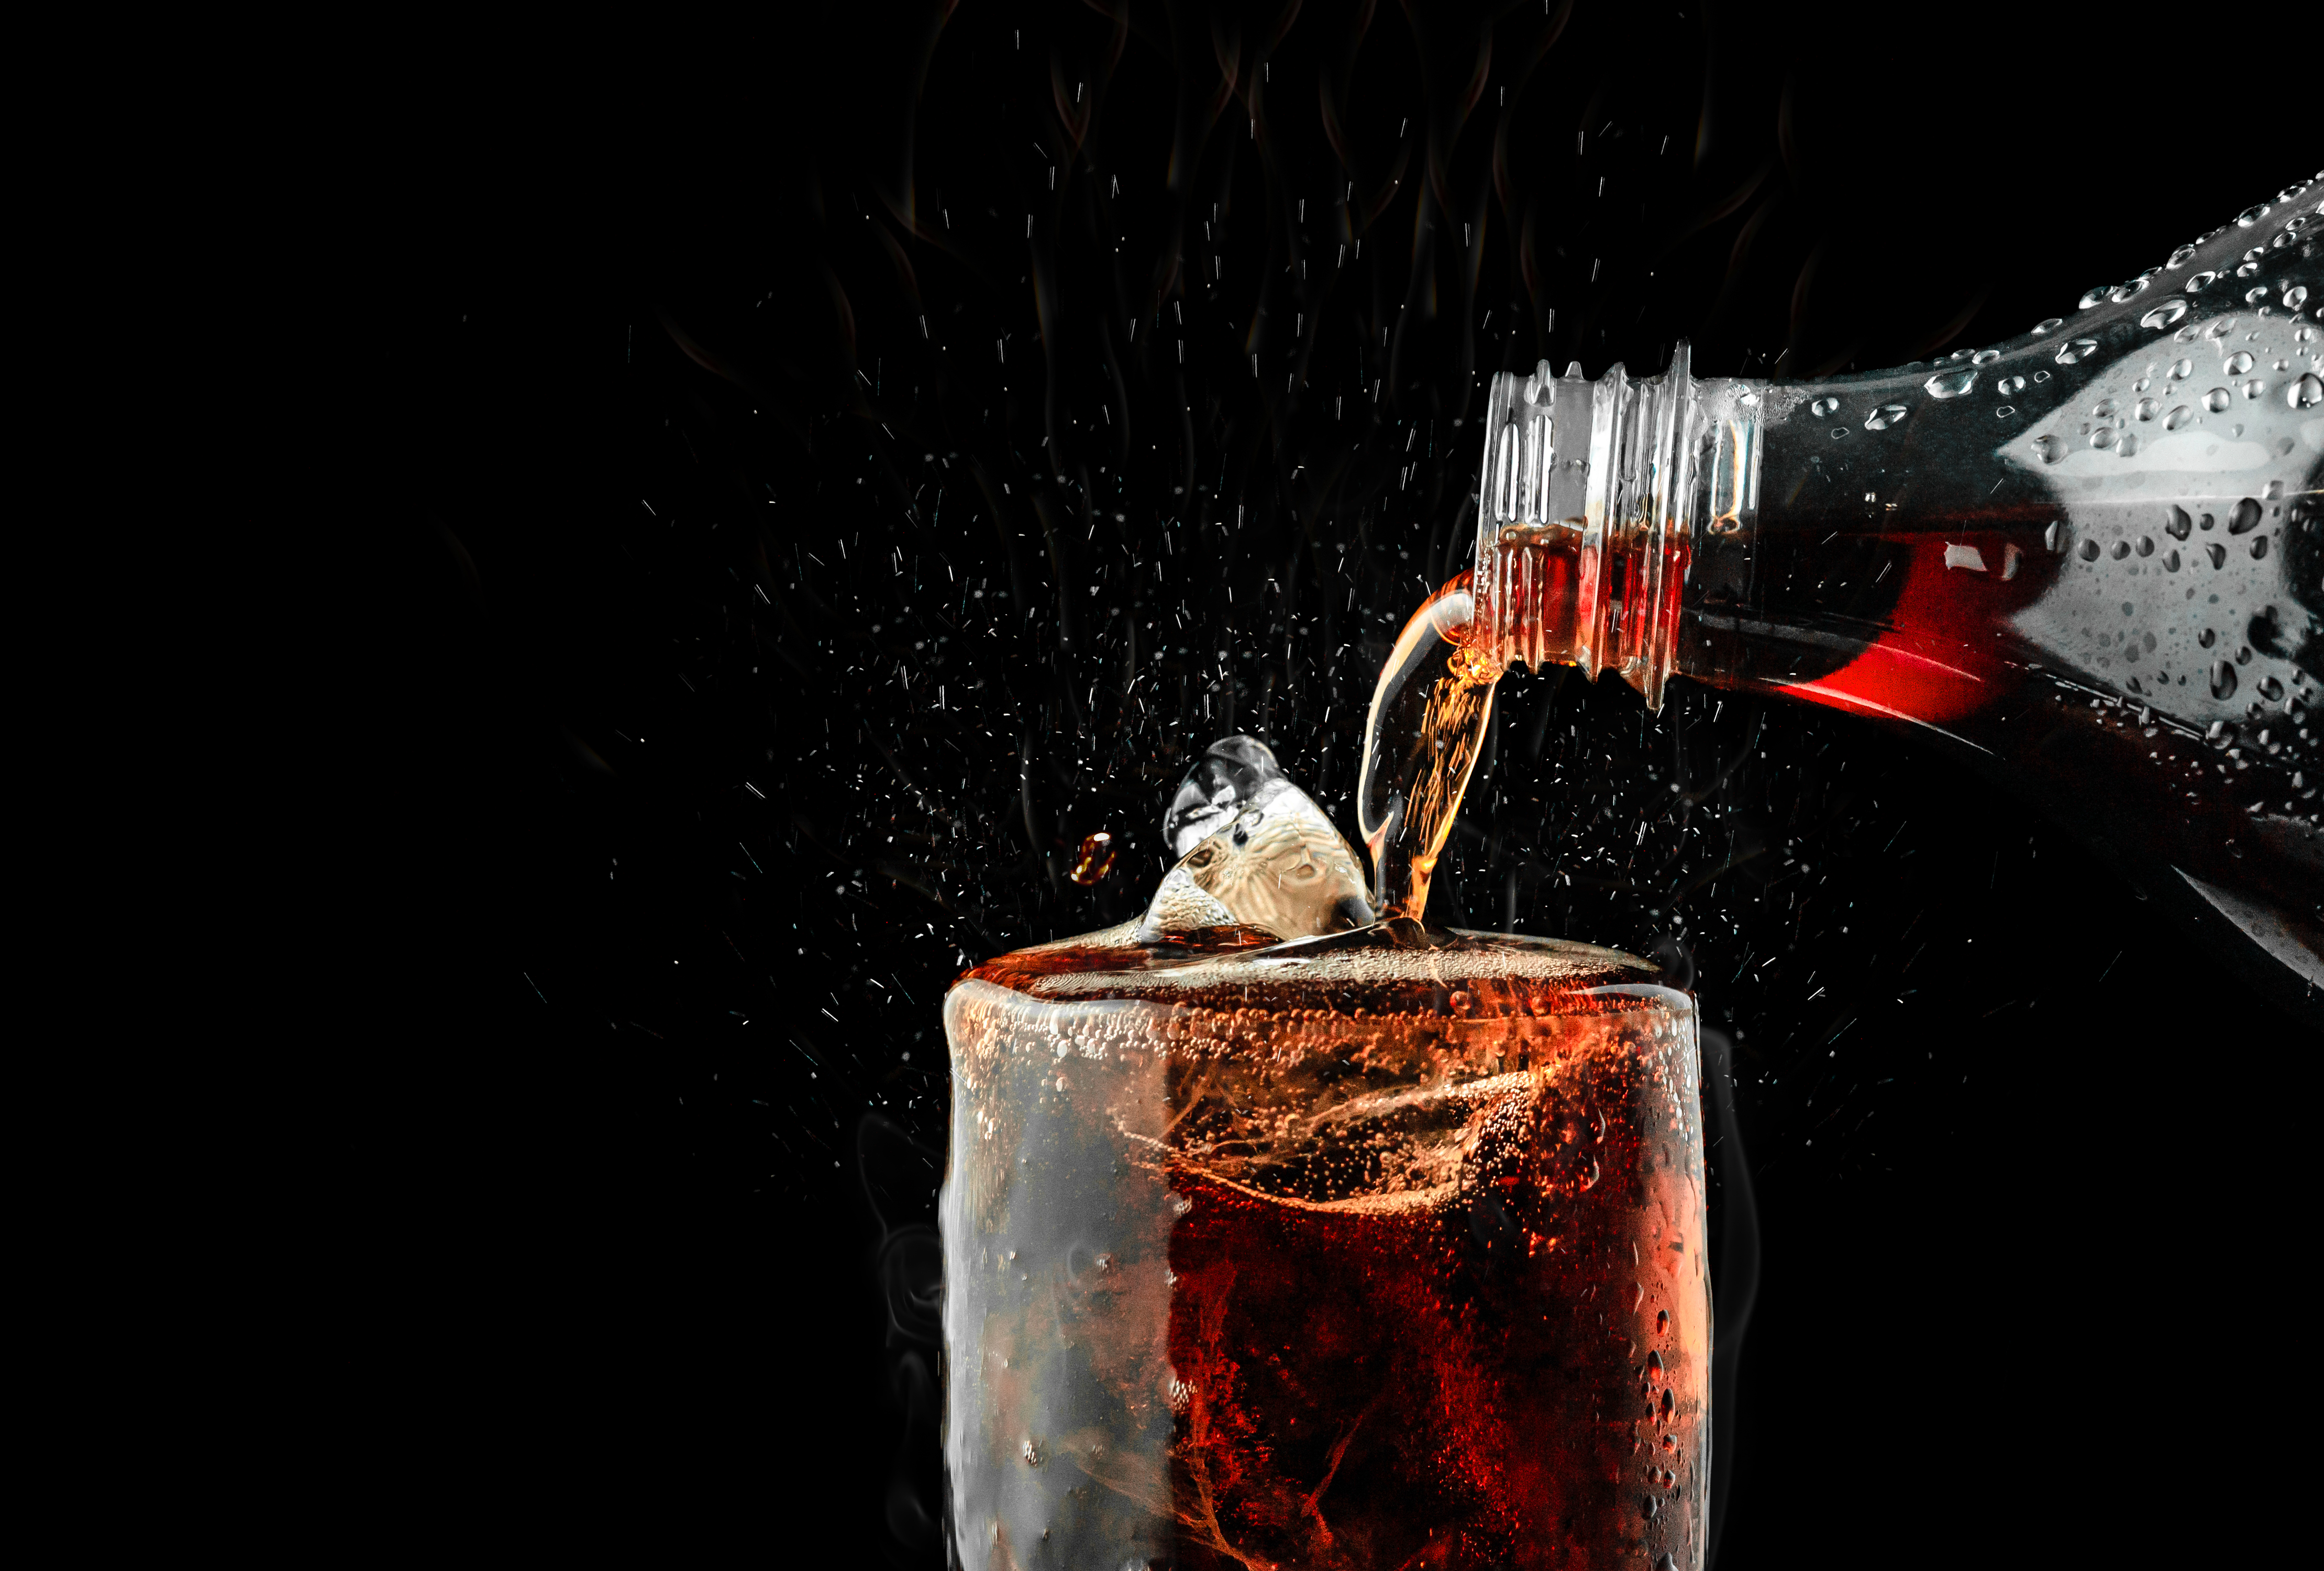 Coca-Cola Original - Nutrition Facts & Ingredients